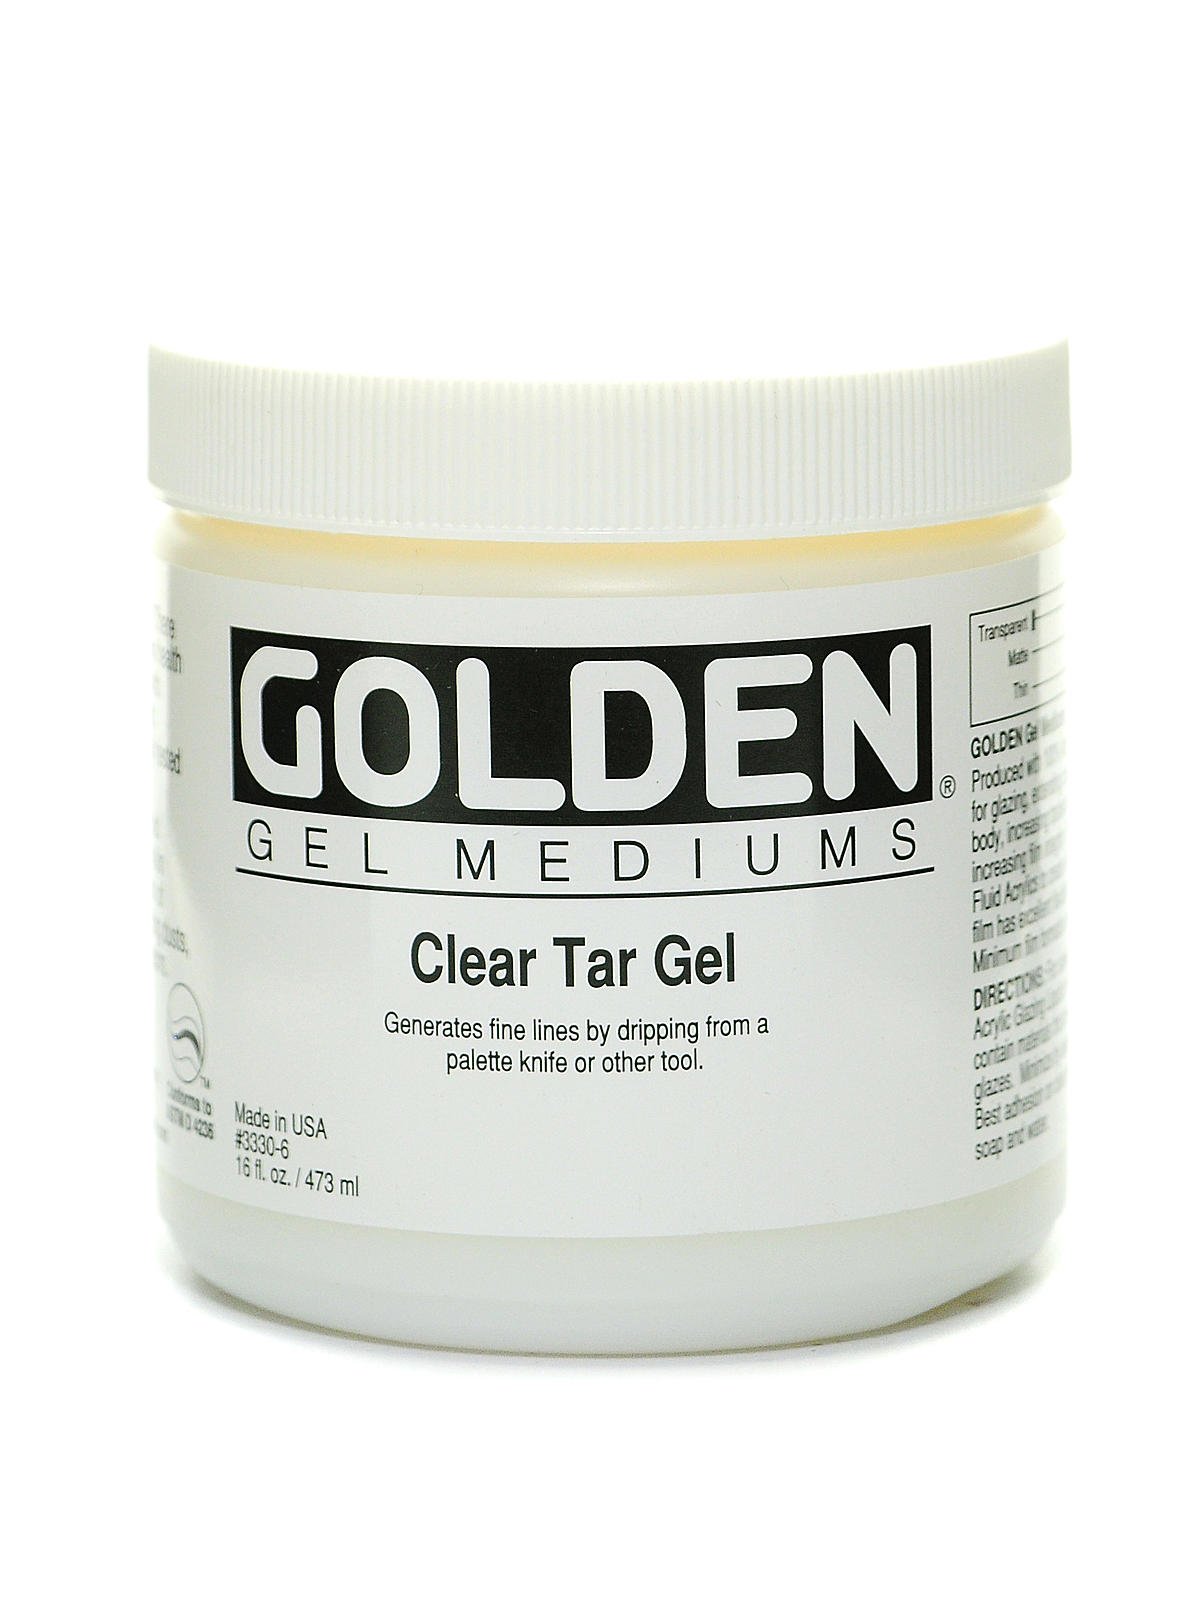 Golden Clear Tar Gel Medium - FLAX art & design